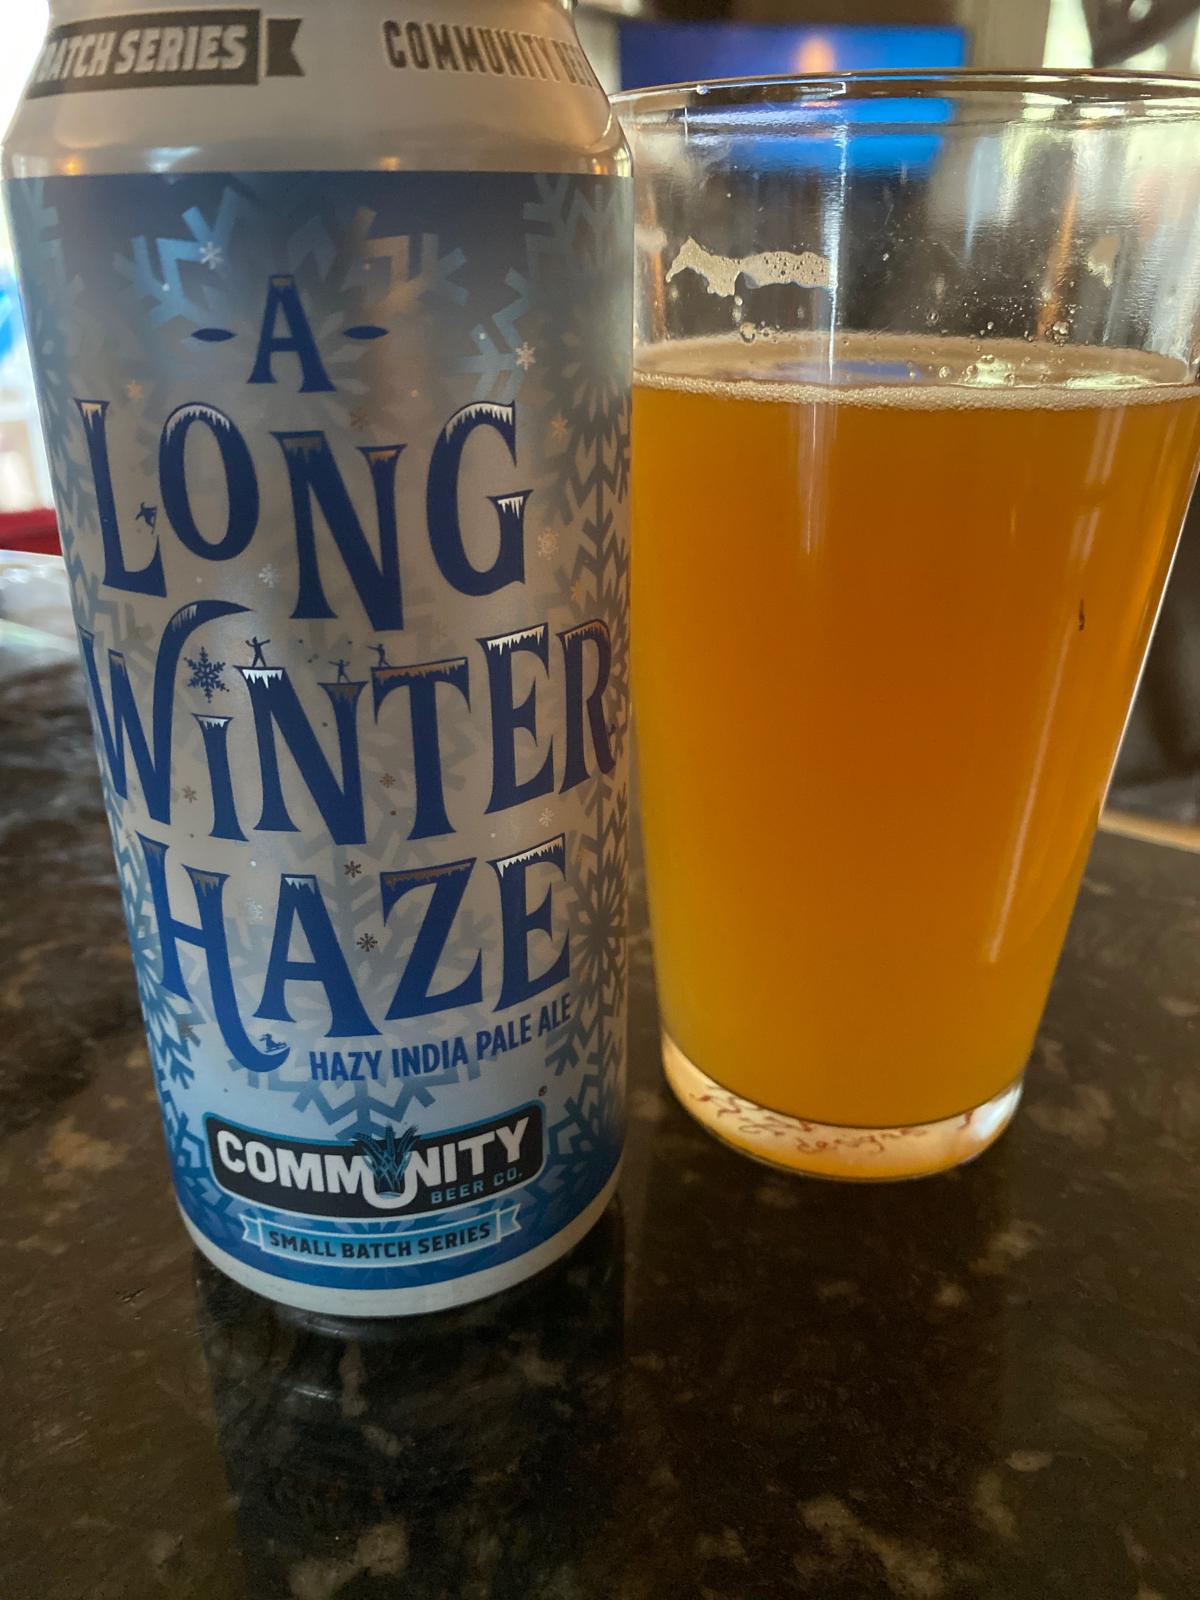 A Long Winter Haze